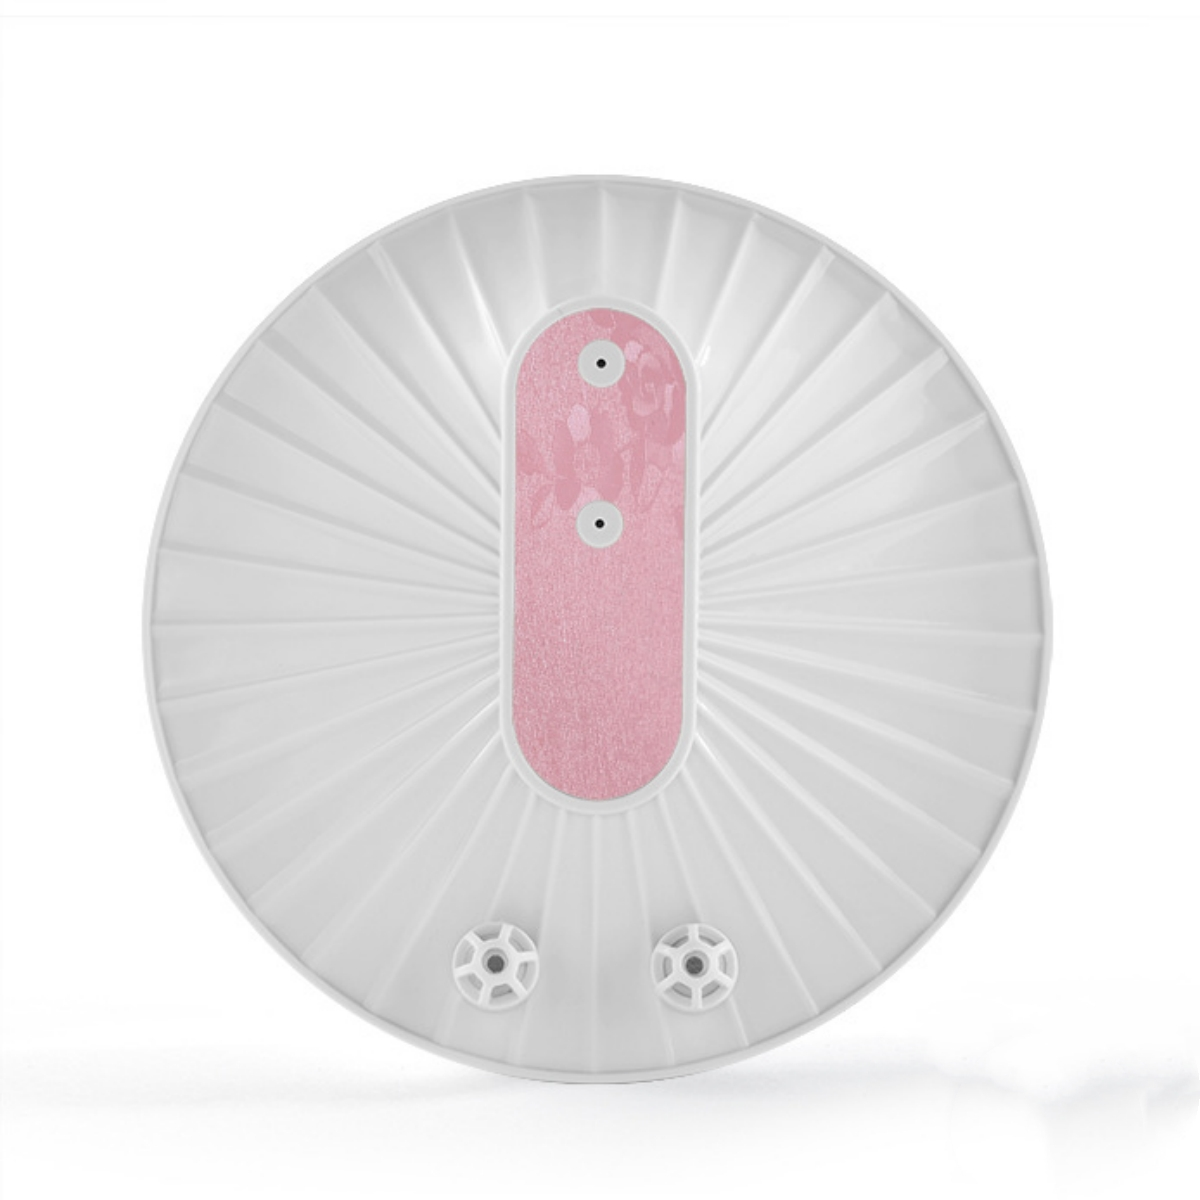 SYNTEK Ultraschall-Geschirrspüler Wiederaufladbar Tragbar Ultraschallreiniger Rosa Kompakt All-in-One